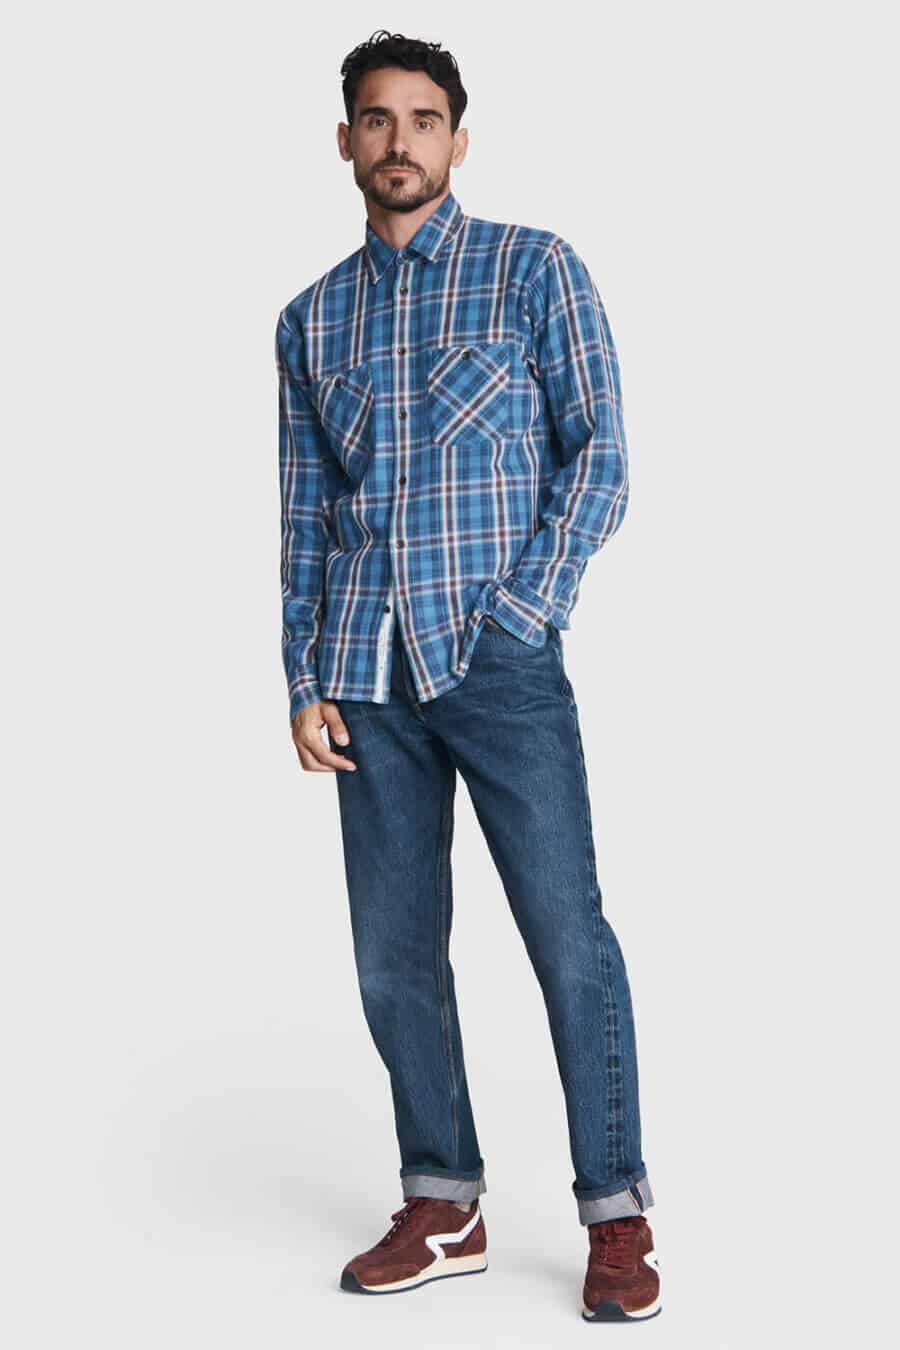 samenkomen onderwijzen duidelijkheid Men's Flannel Shirt Outfit Inspiration: 18 Rugged Looks For 2023